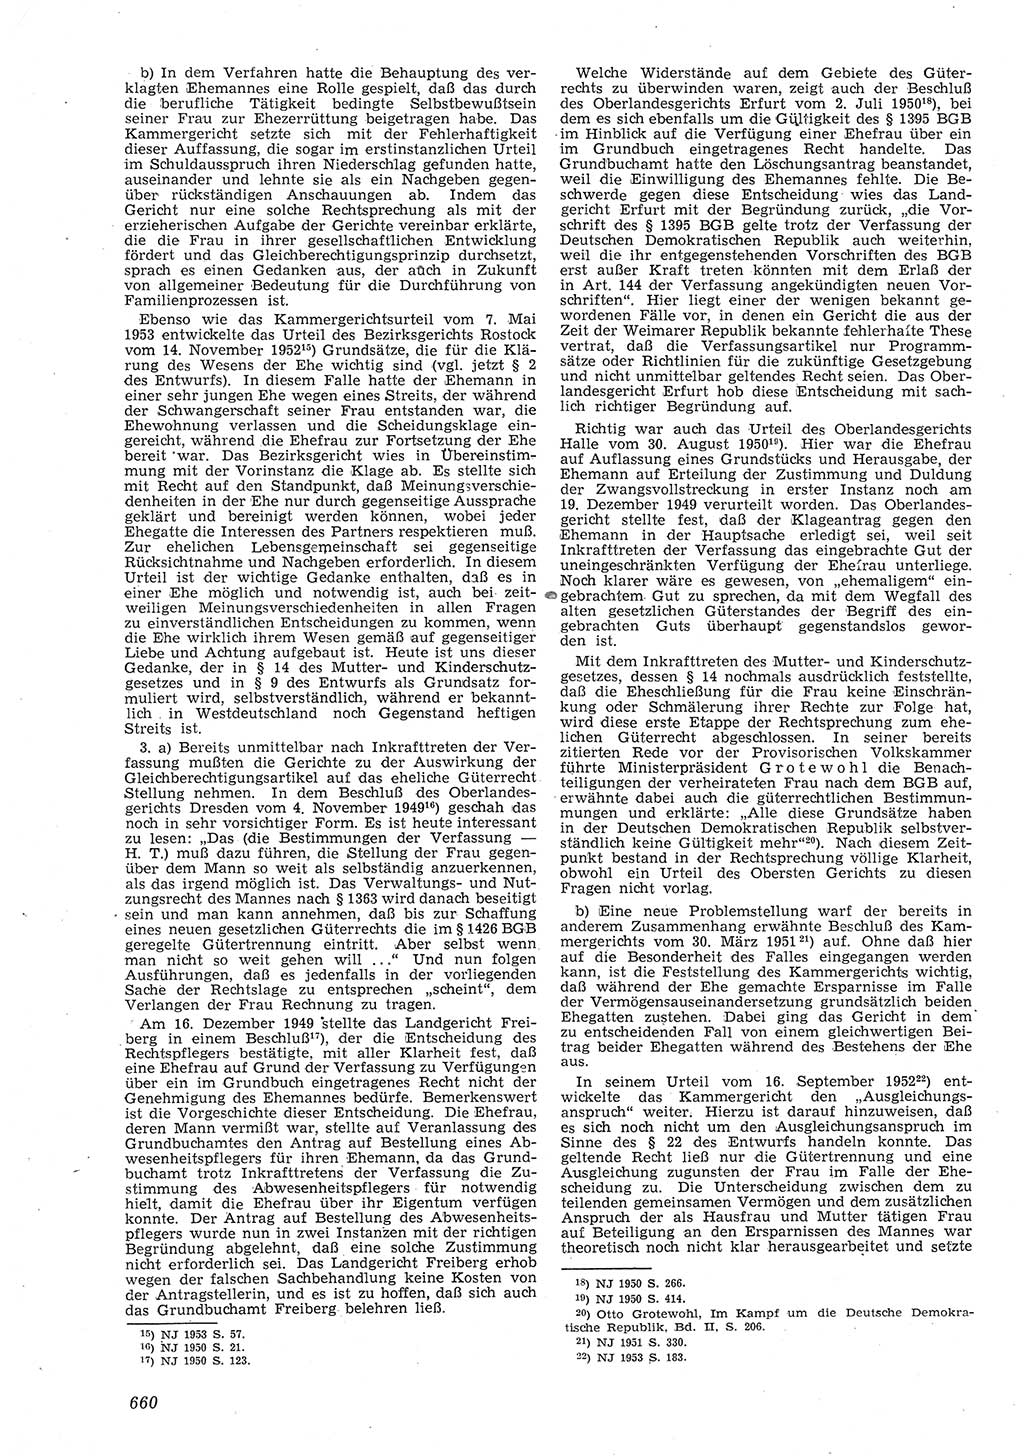 Neue Justiz (NJ), Zeitschrift für Recht und Rechtswissenschaft [Deutsche Demokratische Republik (DDR)], 8. Jahrgang 1954, Seite 660 (NJ DDR 1954, S. 660)